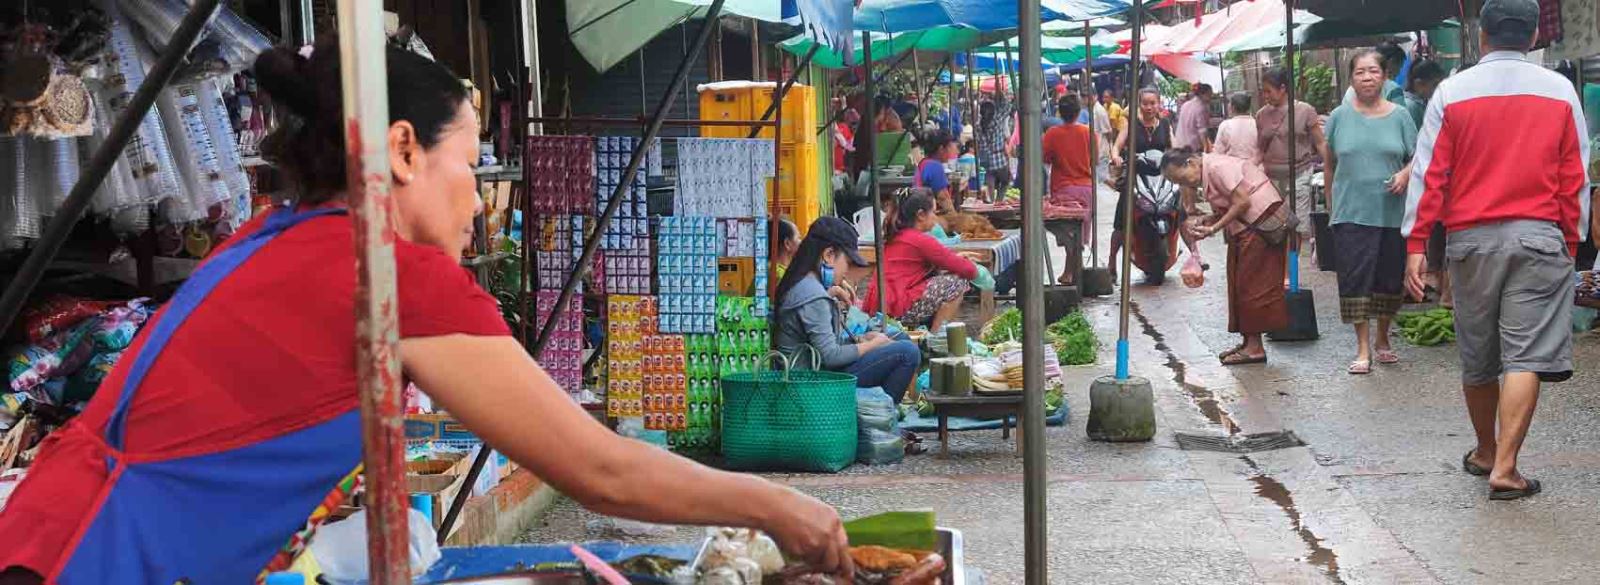 Daily morning market in Luang Prabang